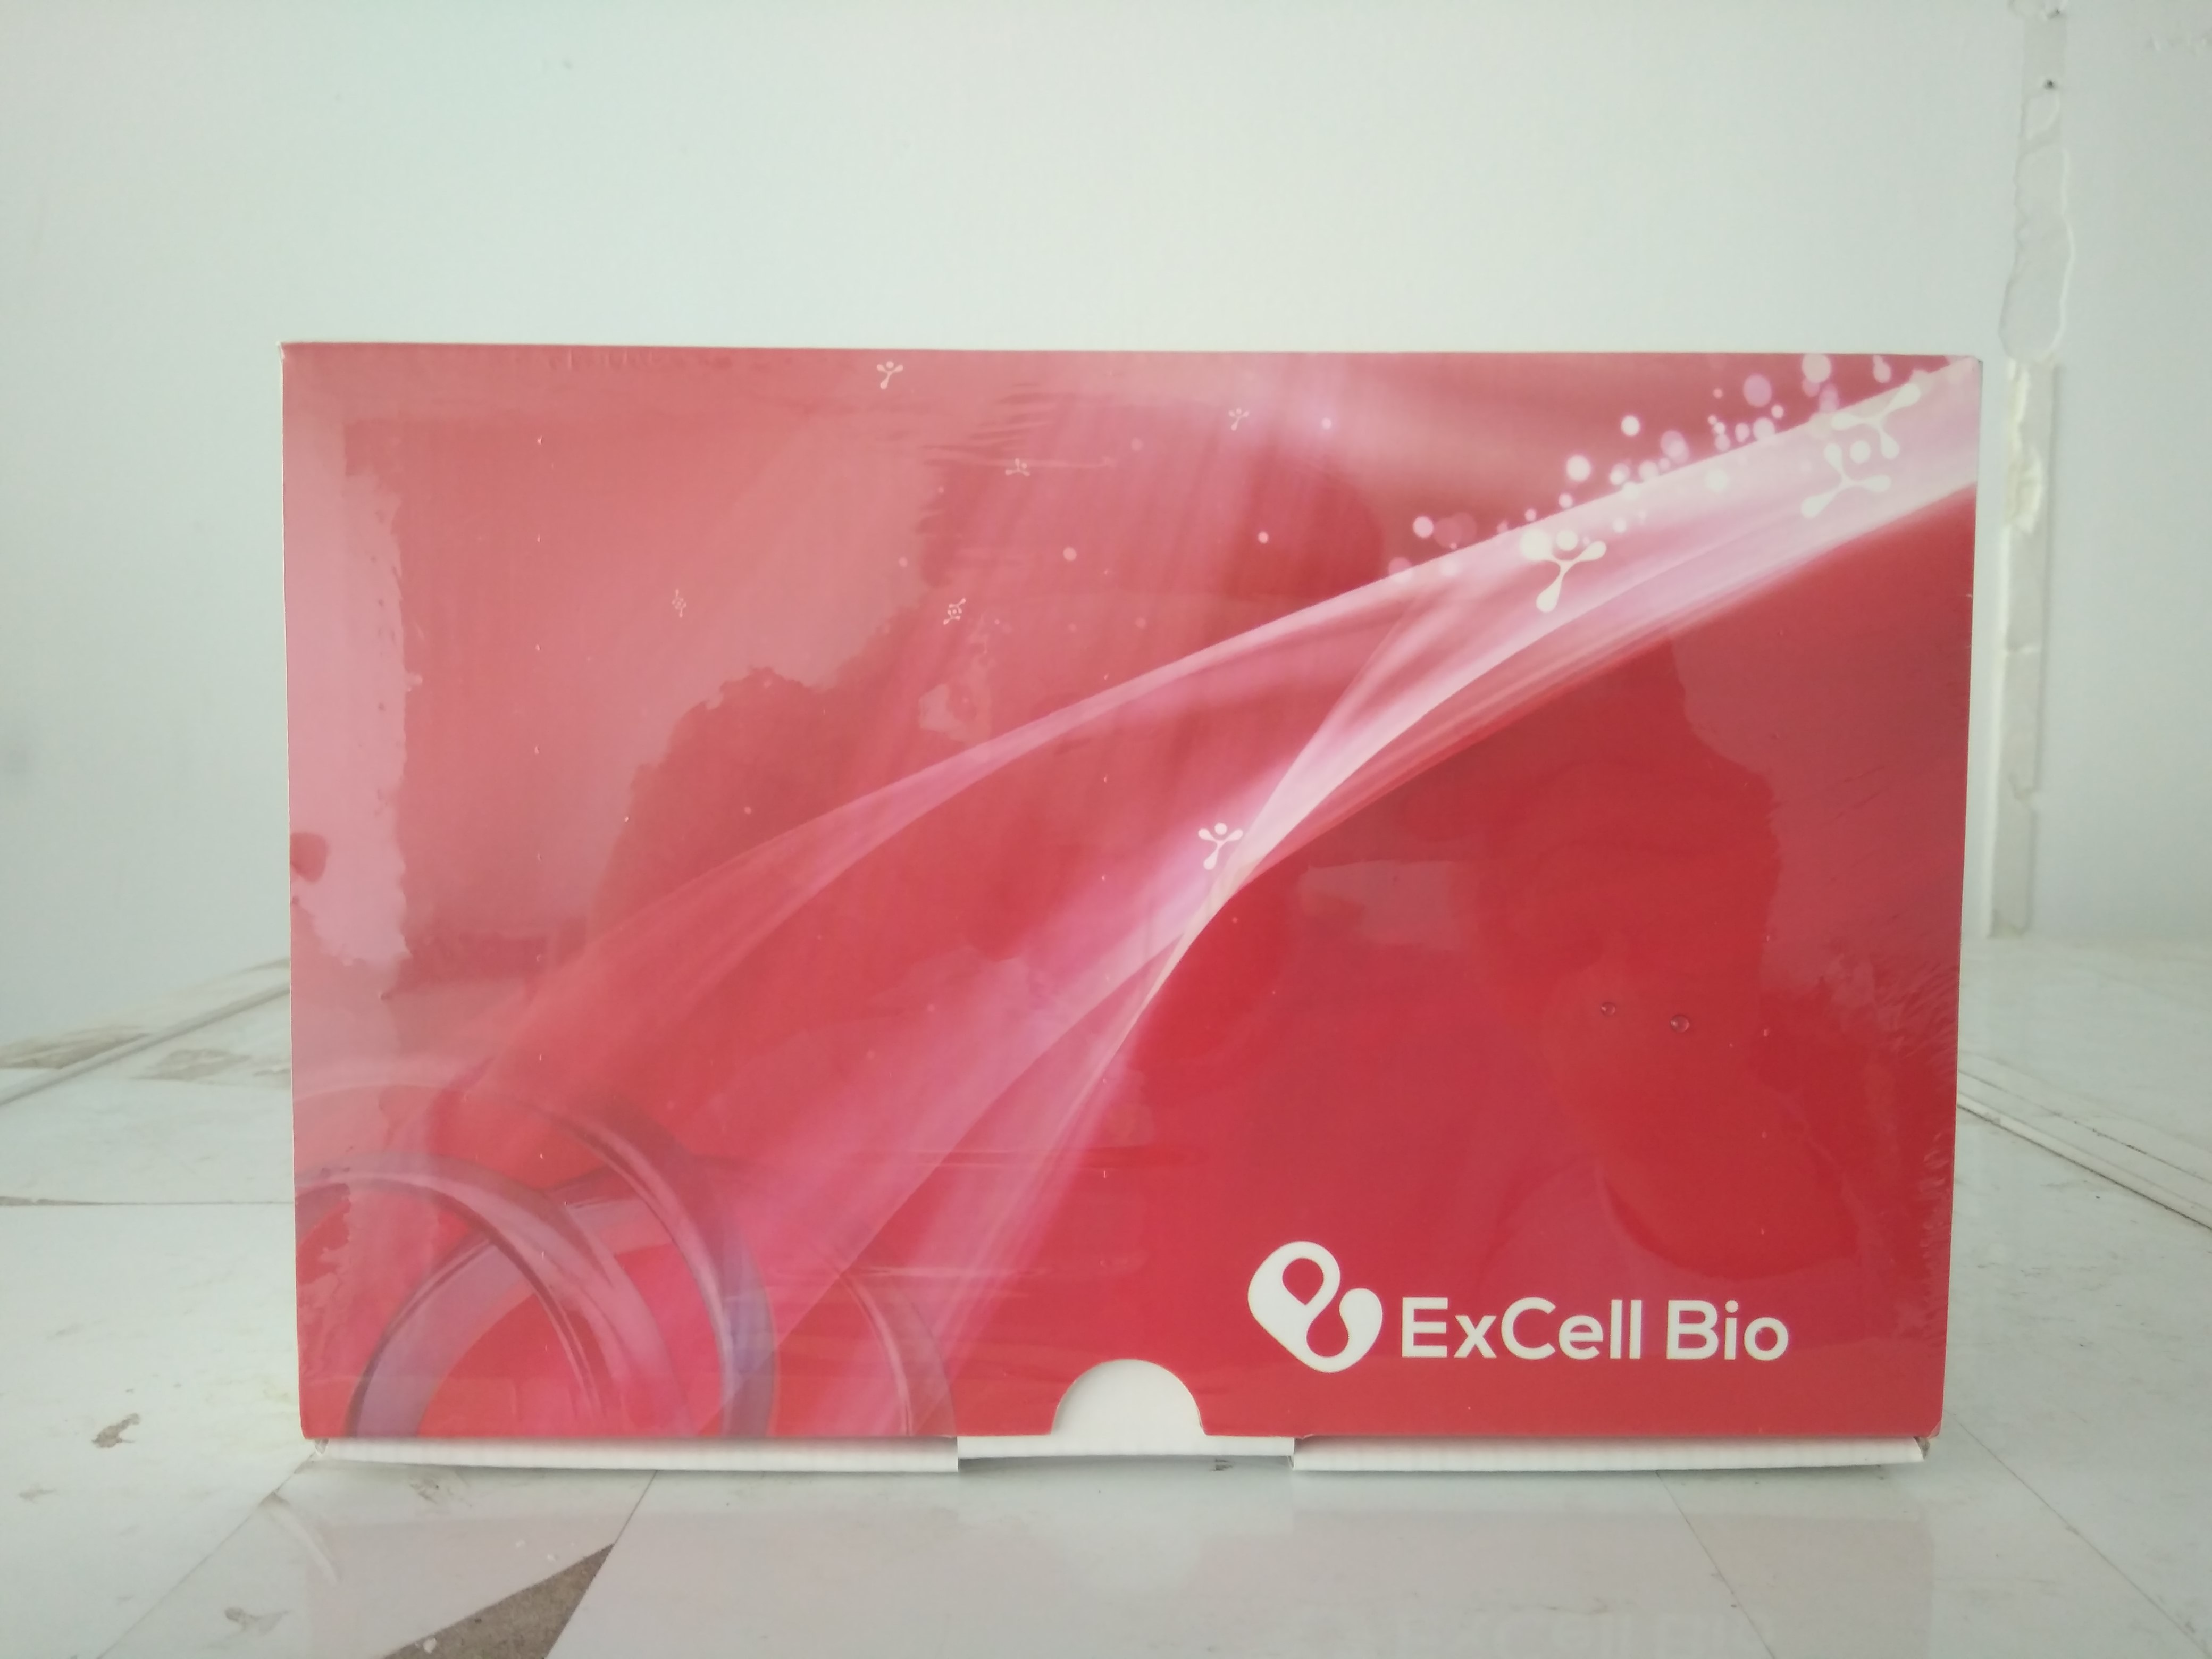 Excell Bio(依科赛)Elisa试剂盒